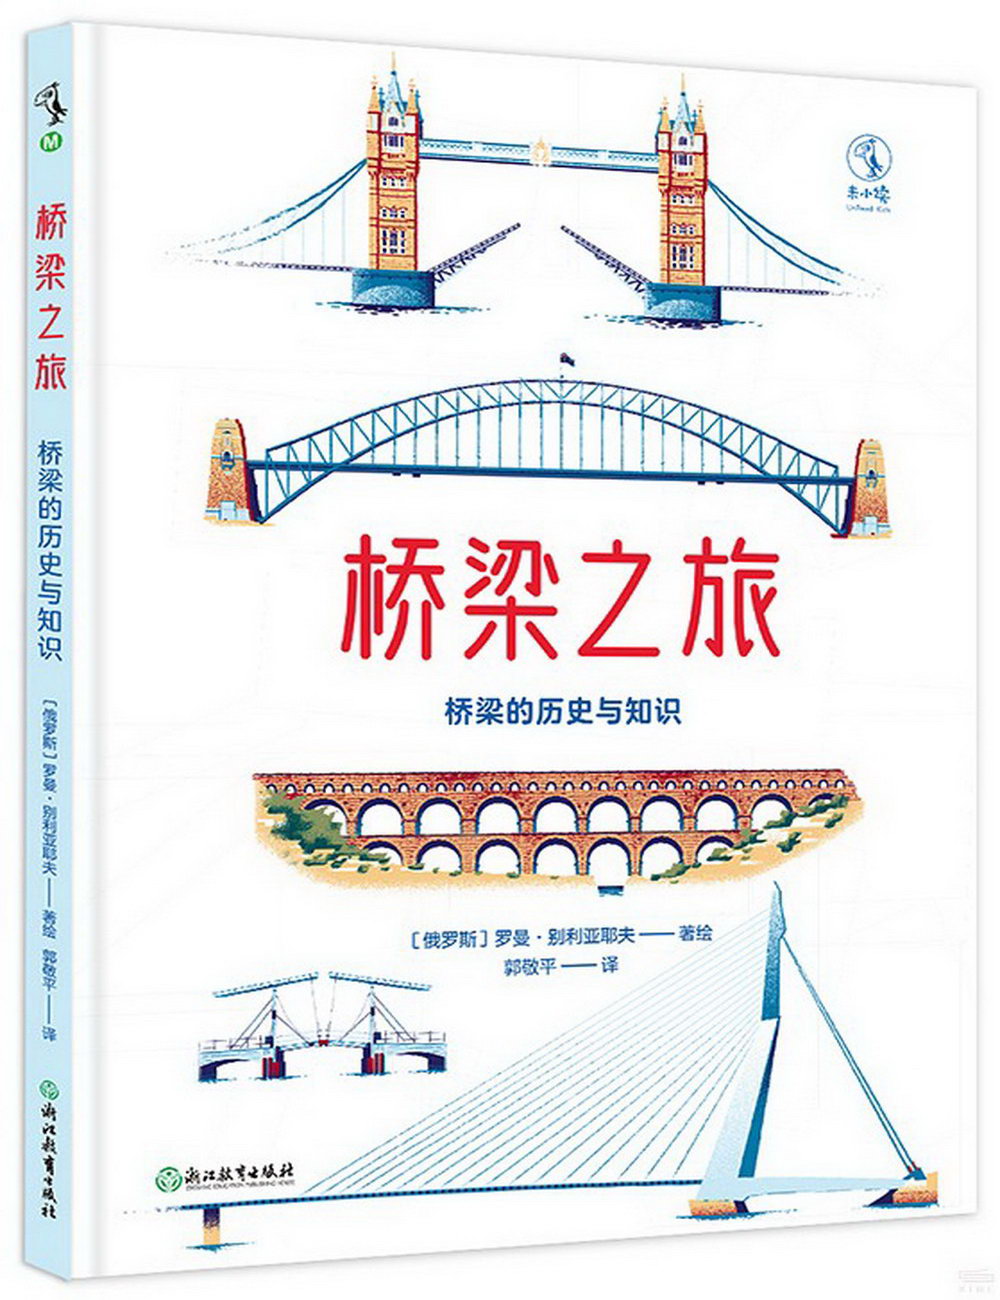 橋樑之旅：橋樑的歷史和知識